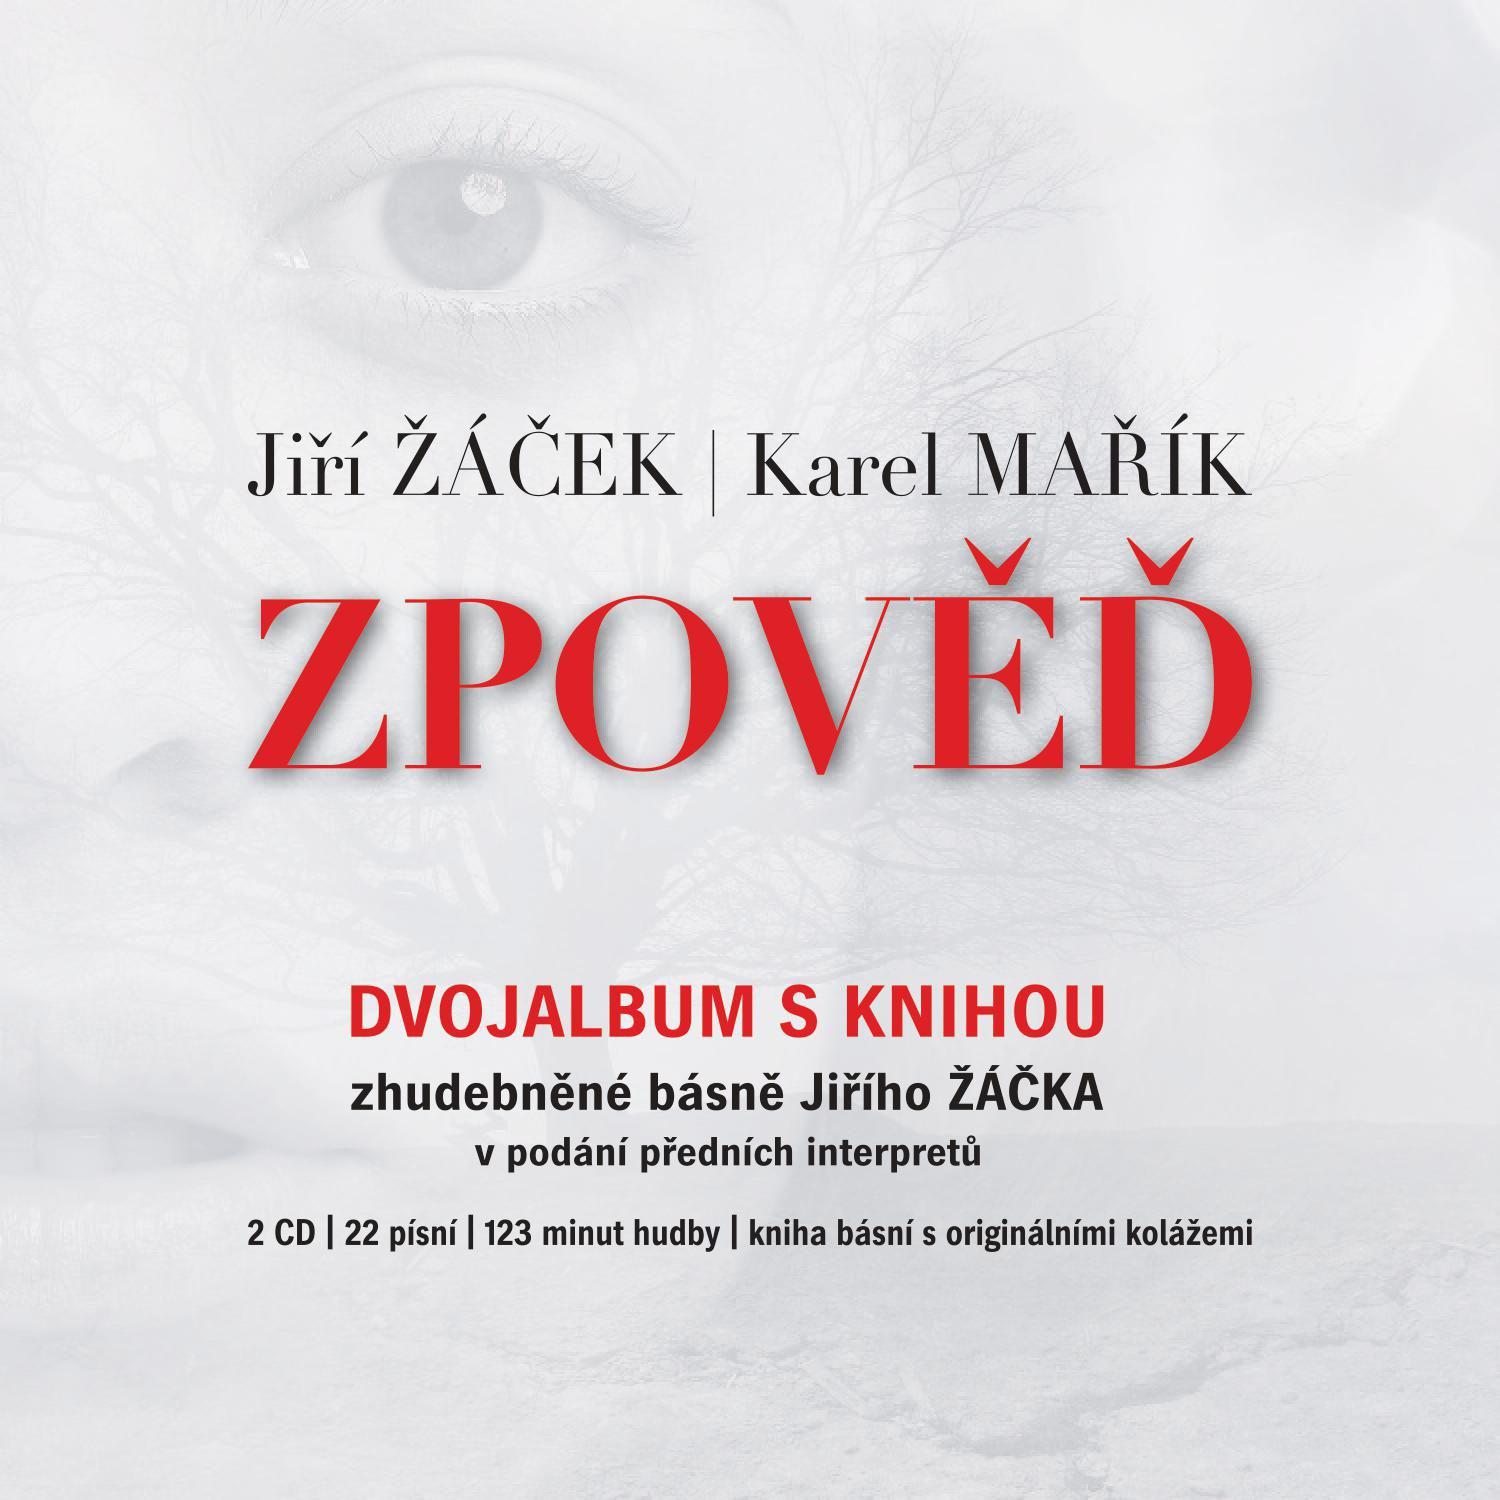 CD Shop - VARIOUS JIRI ZACEK, KAREL MARIK: ZPOVED